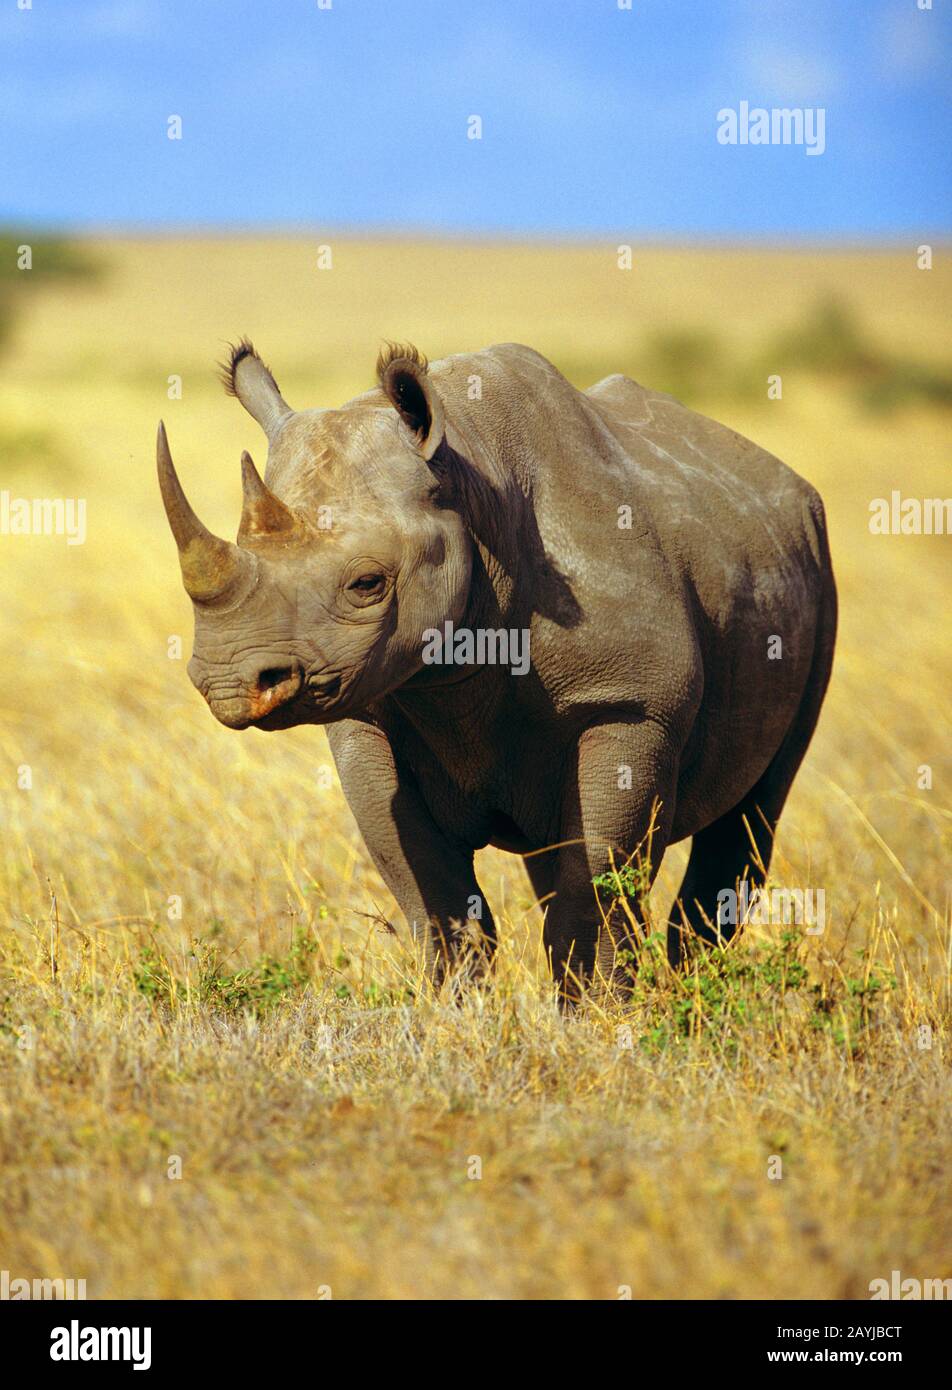 Rhinocéros noirs, rhinocéros accro, rhinocéros de navigation (Diceros bicornis), debout dans la savane, vue de face, Afrique Banque D'Images